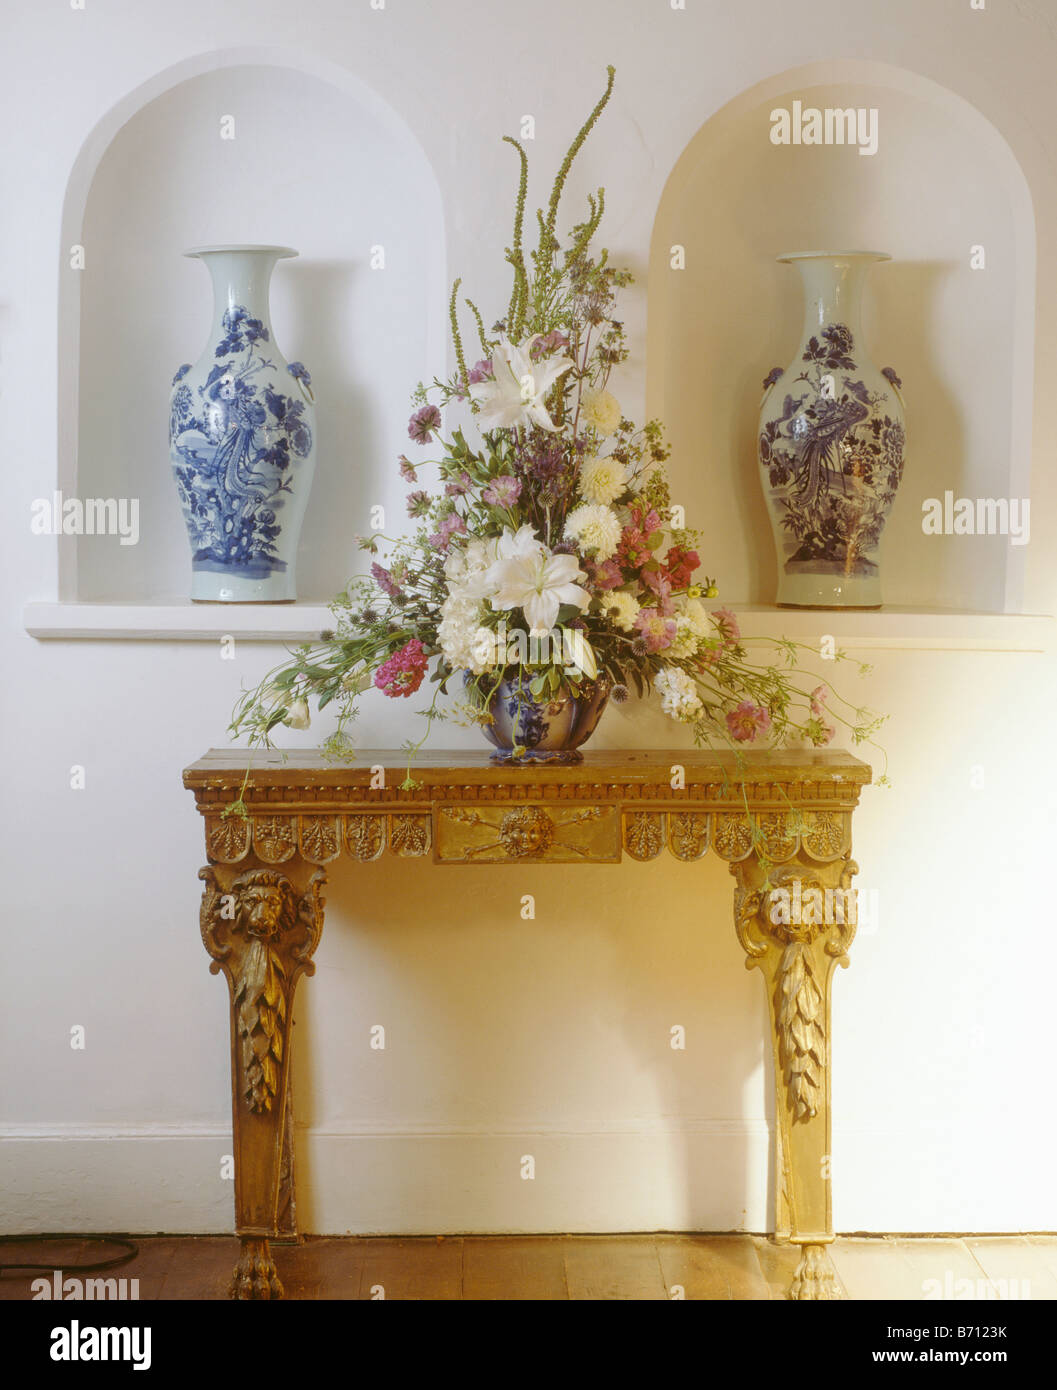 Weiße Lilien in Frisches Blumenarrangement auf Konsole Tisch vor Nischen mit hohen blaue und weiße Vasen Stockfoto